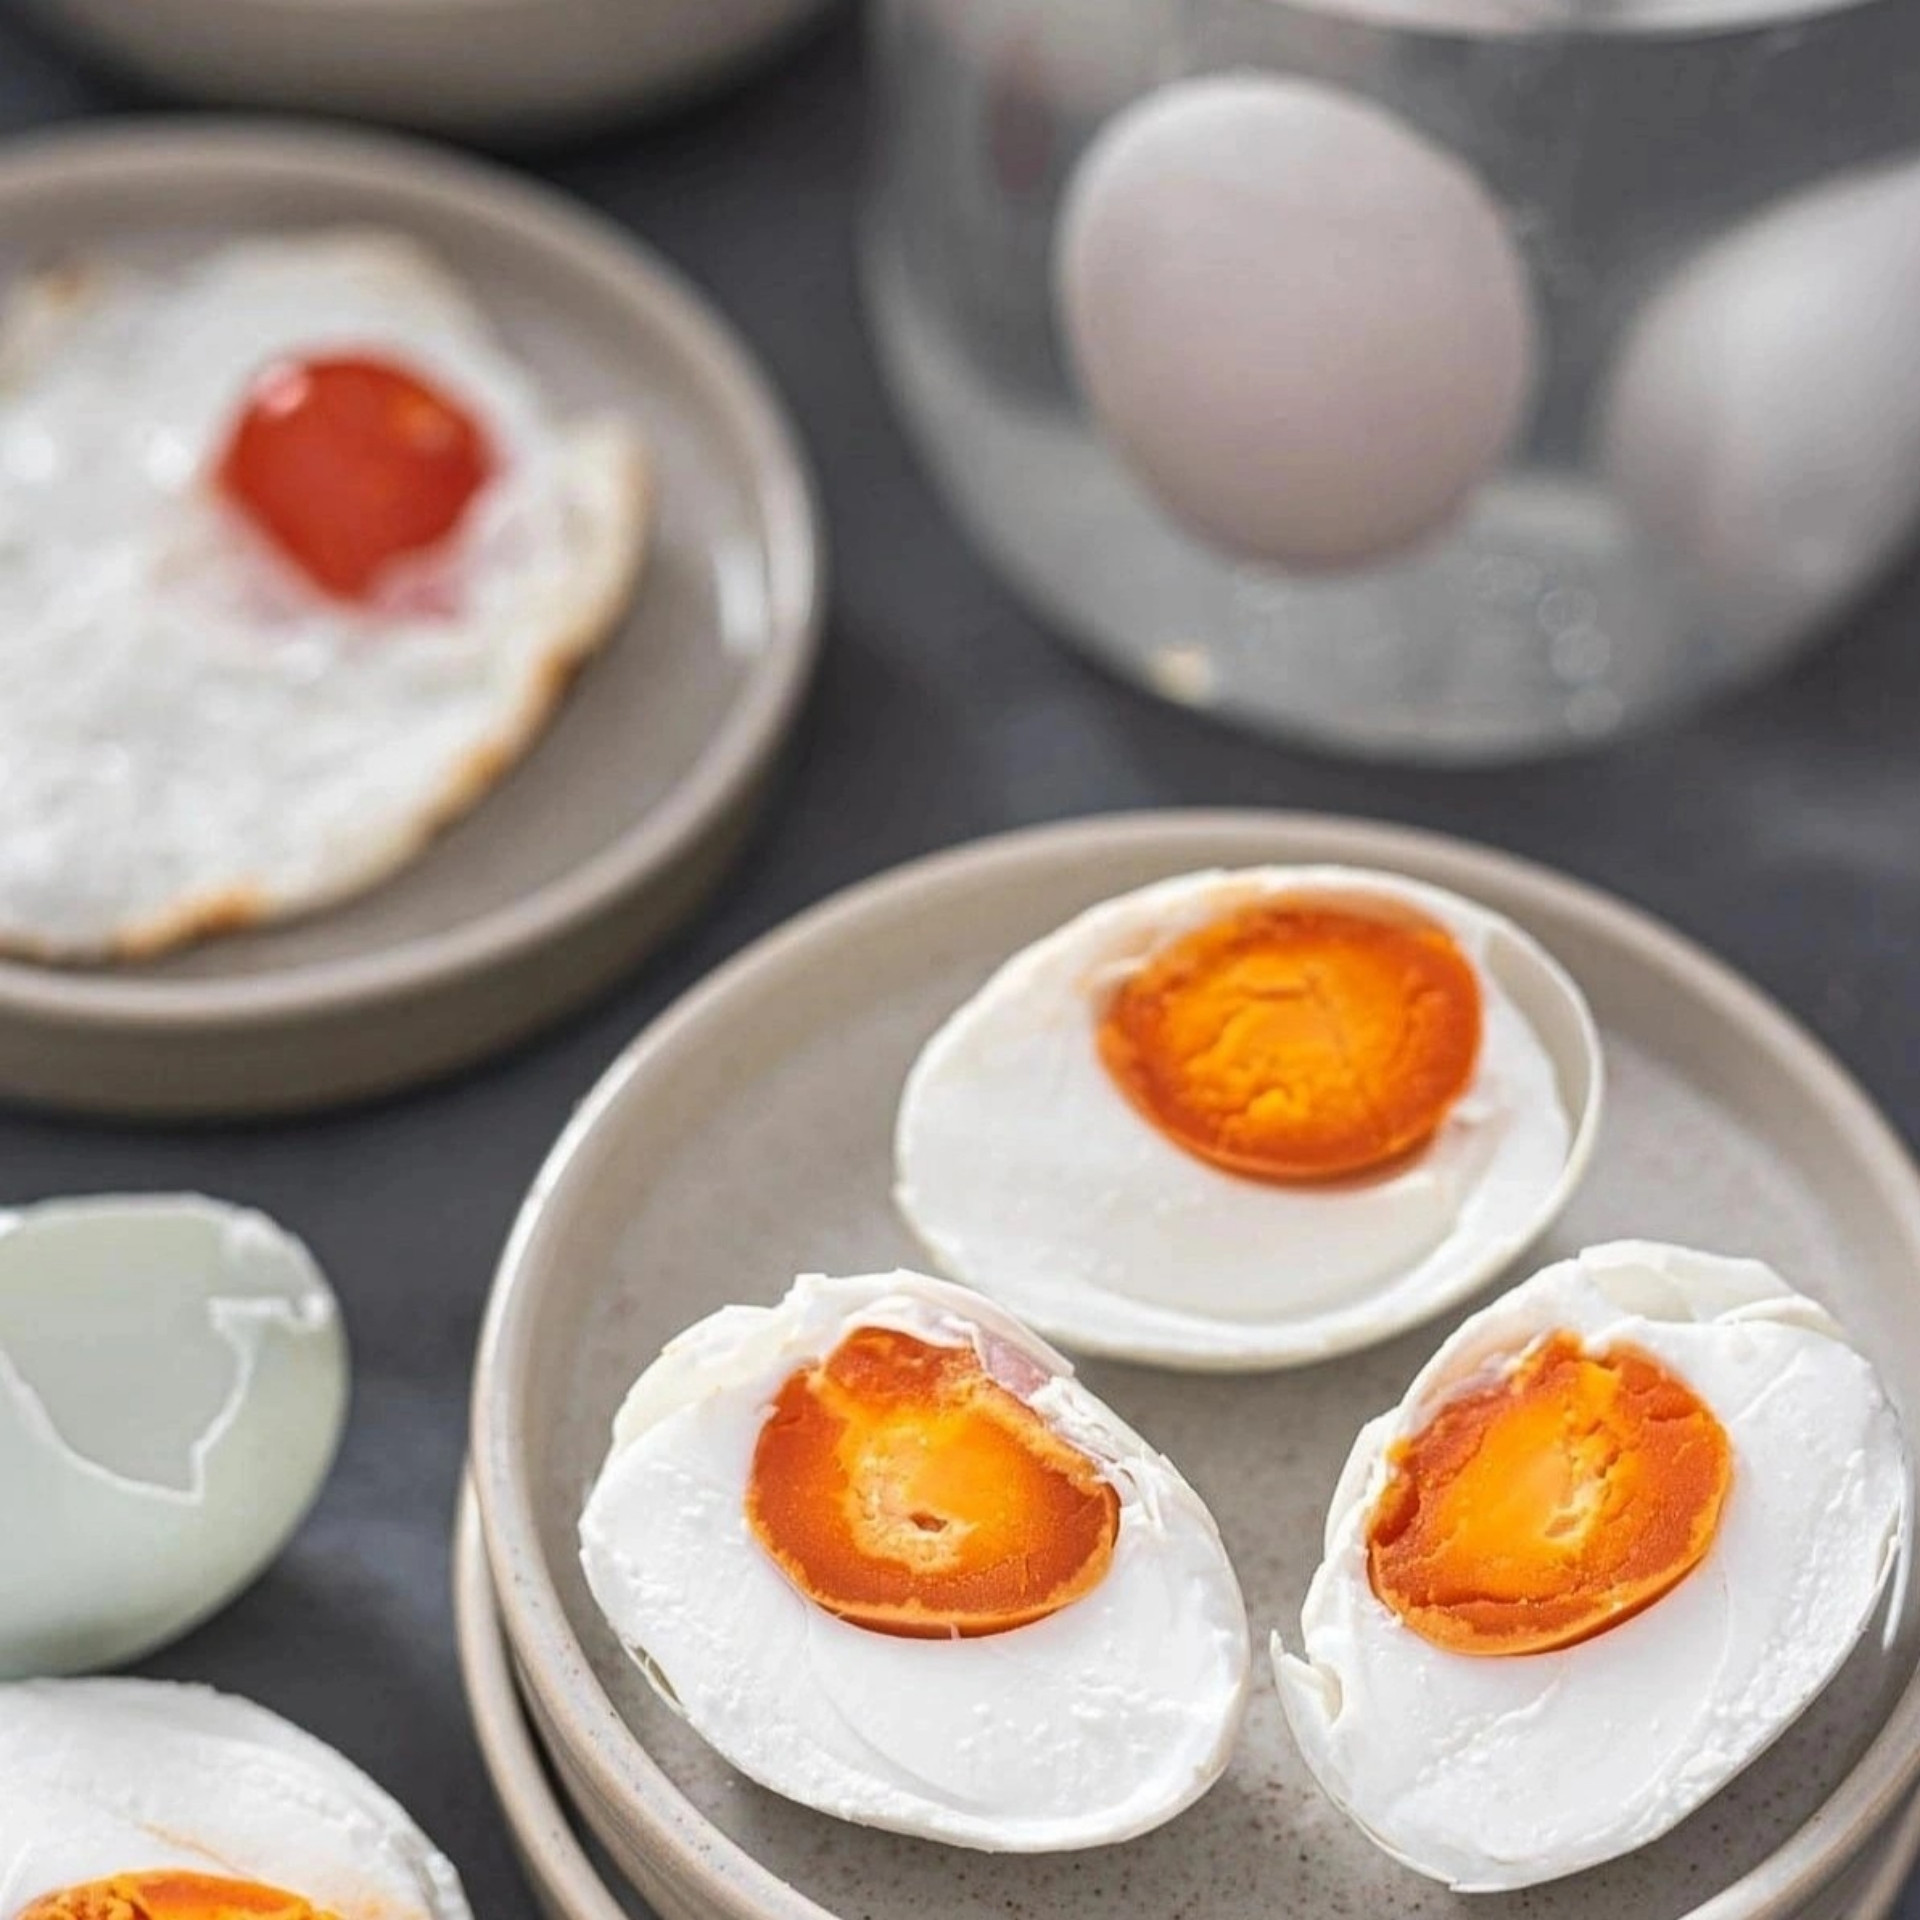 Salted egg. Salt Egg. Duck Egg. Boiled Egg with Liquid yolk.